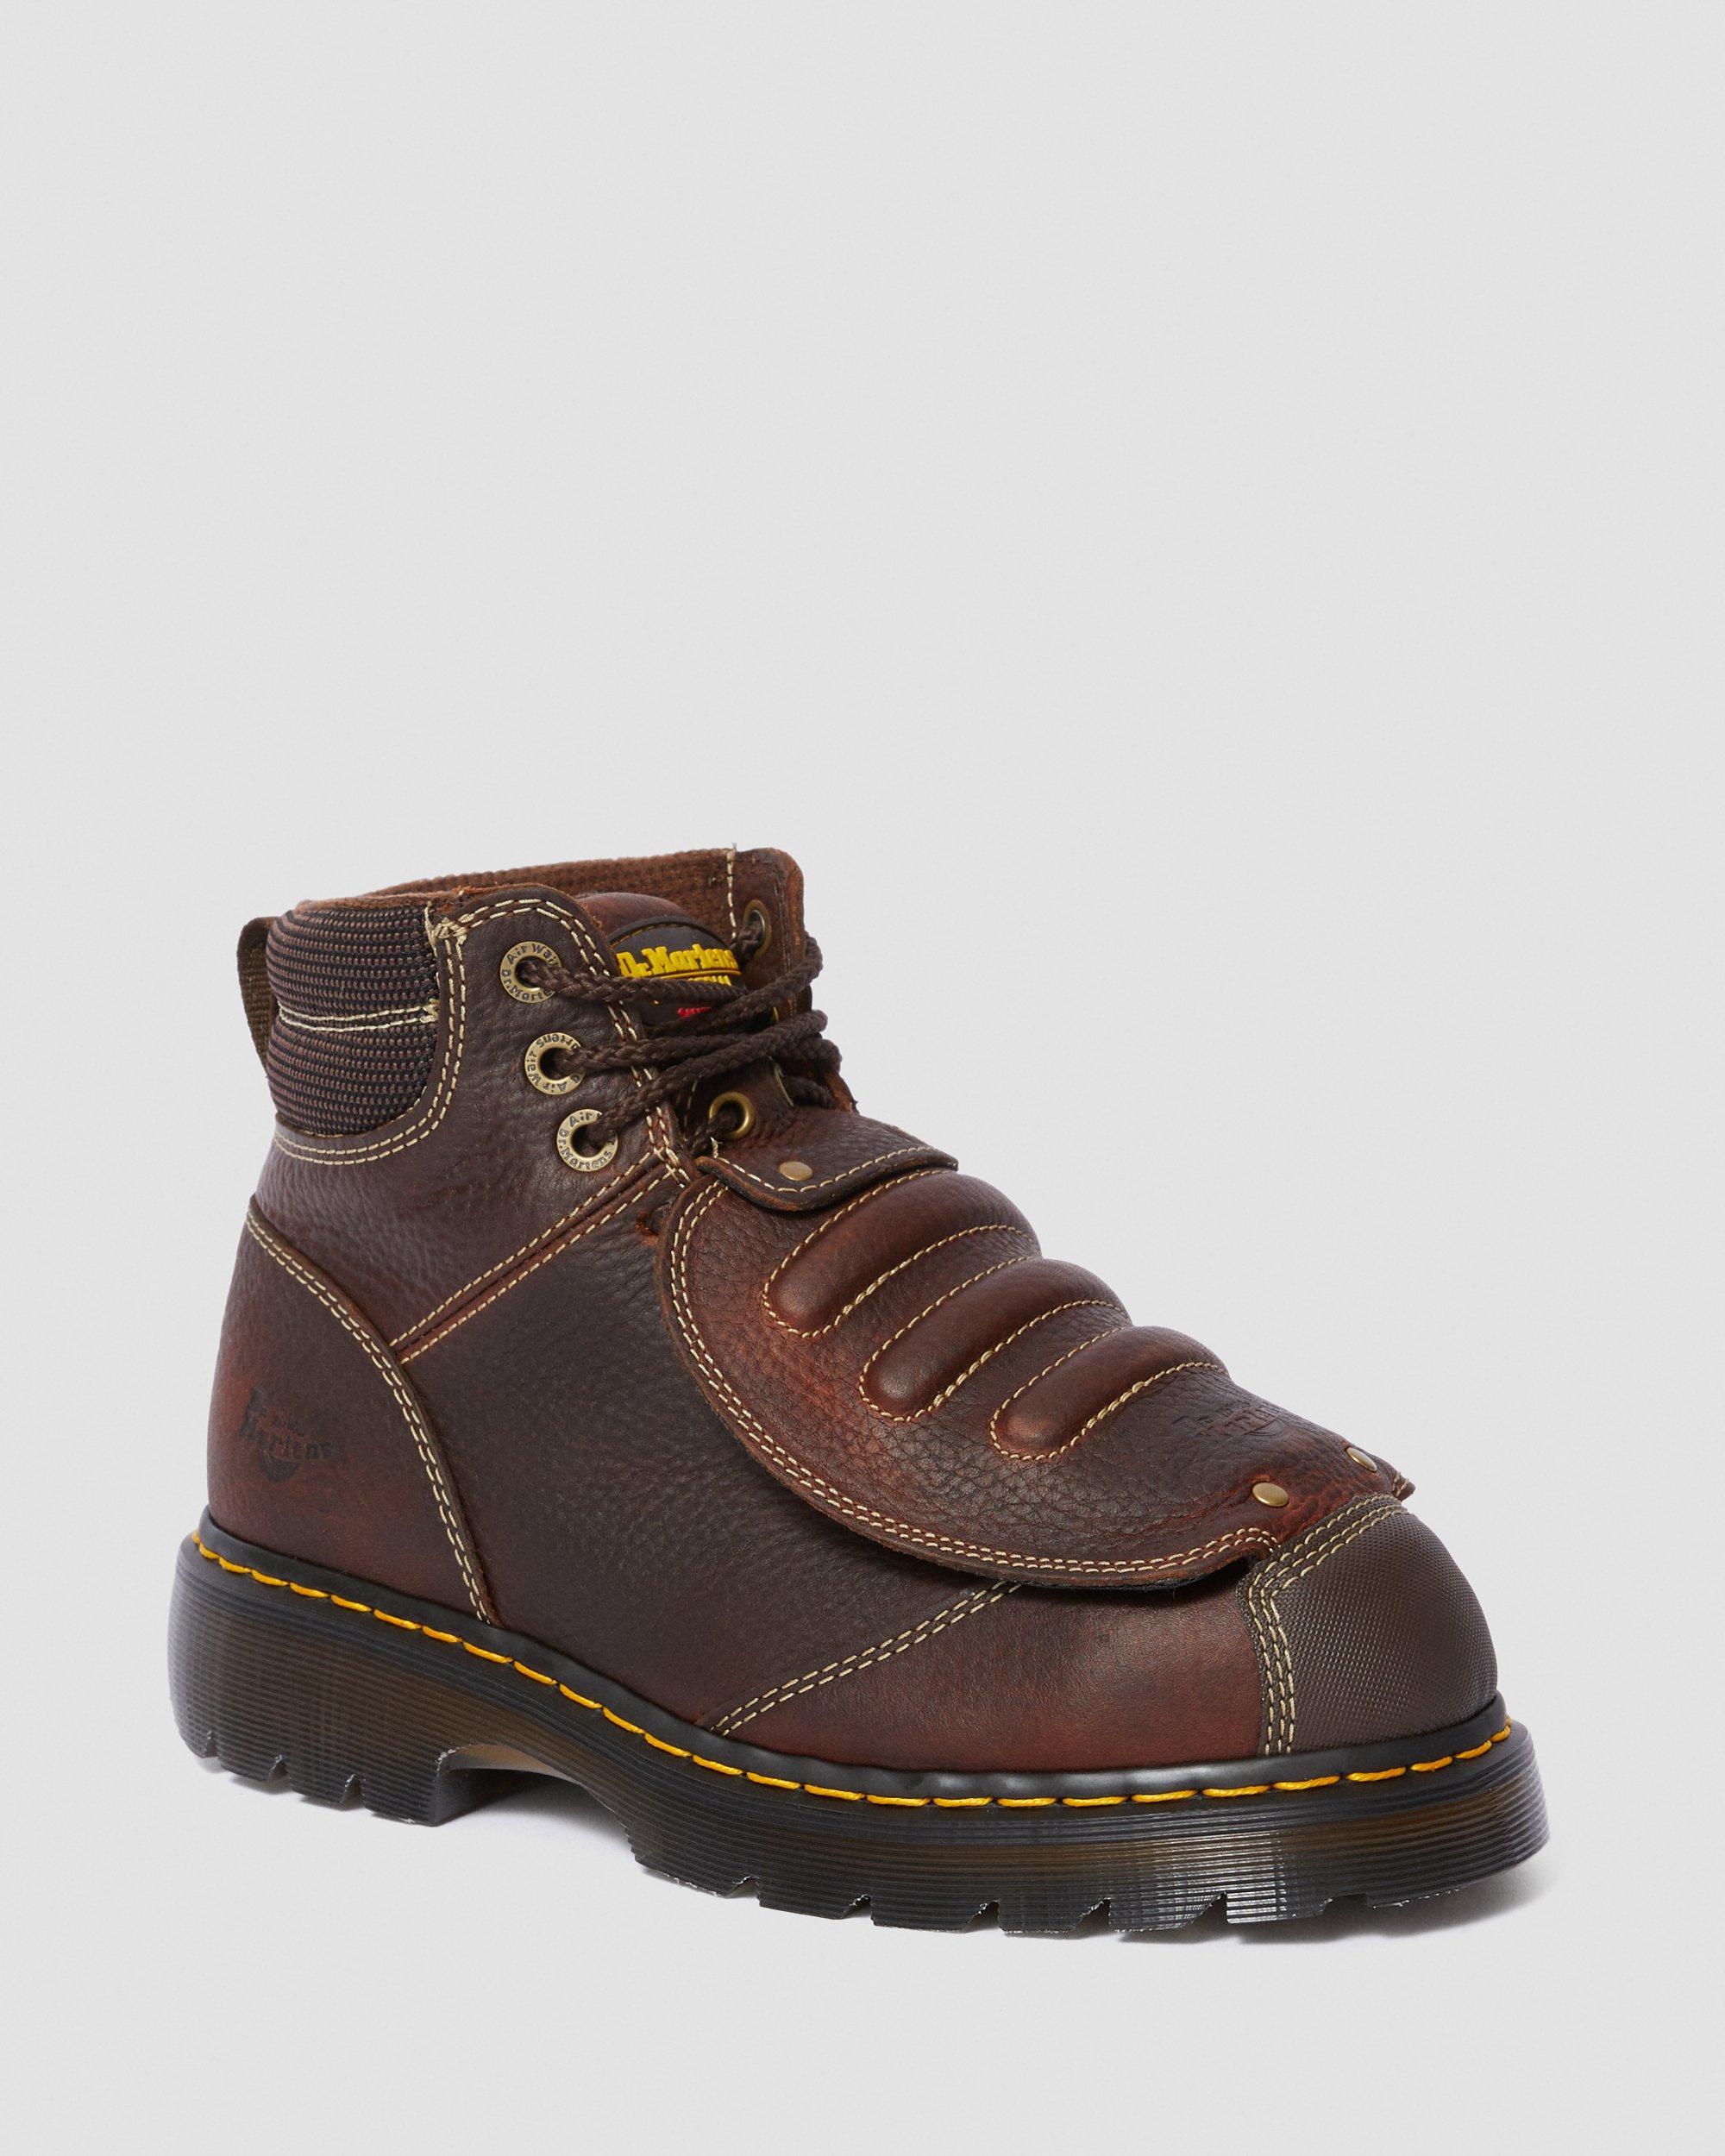 Ironbridge Leather Met Guard Work Boots, Teak | Dr. Martens